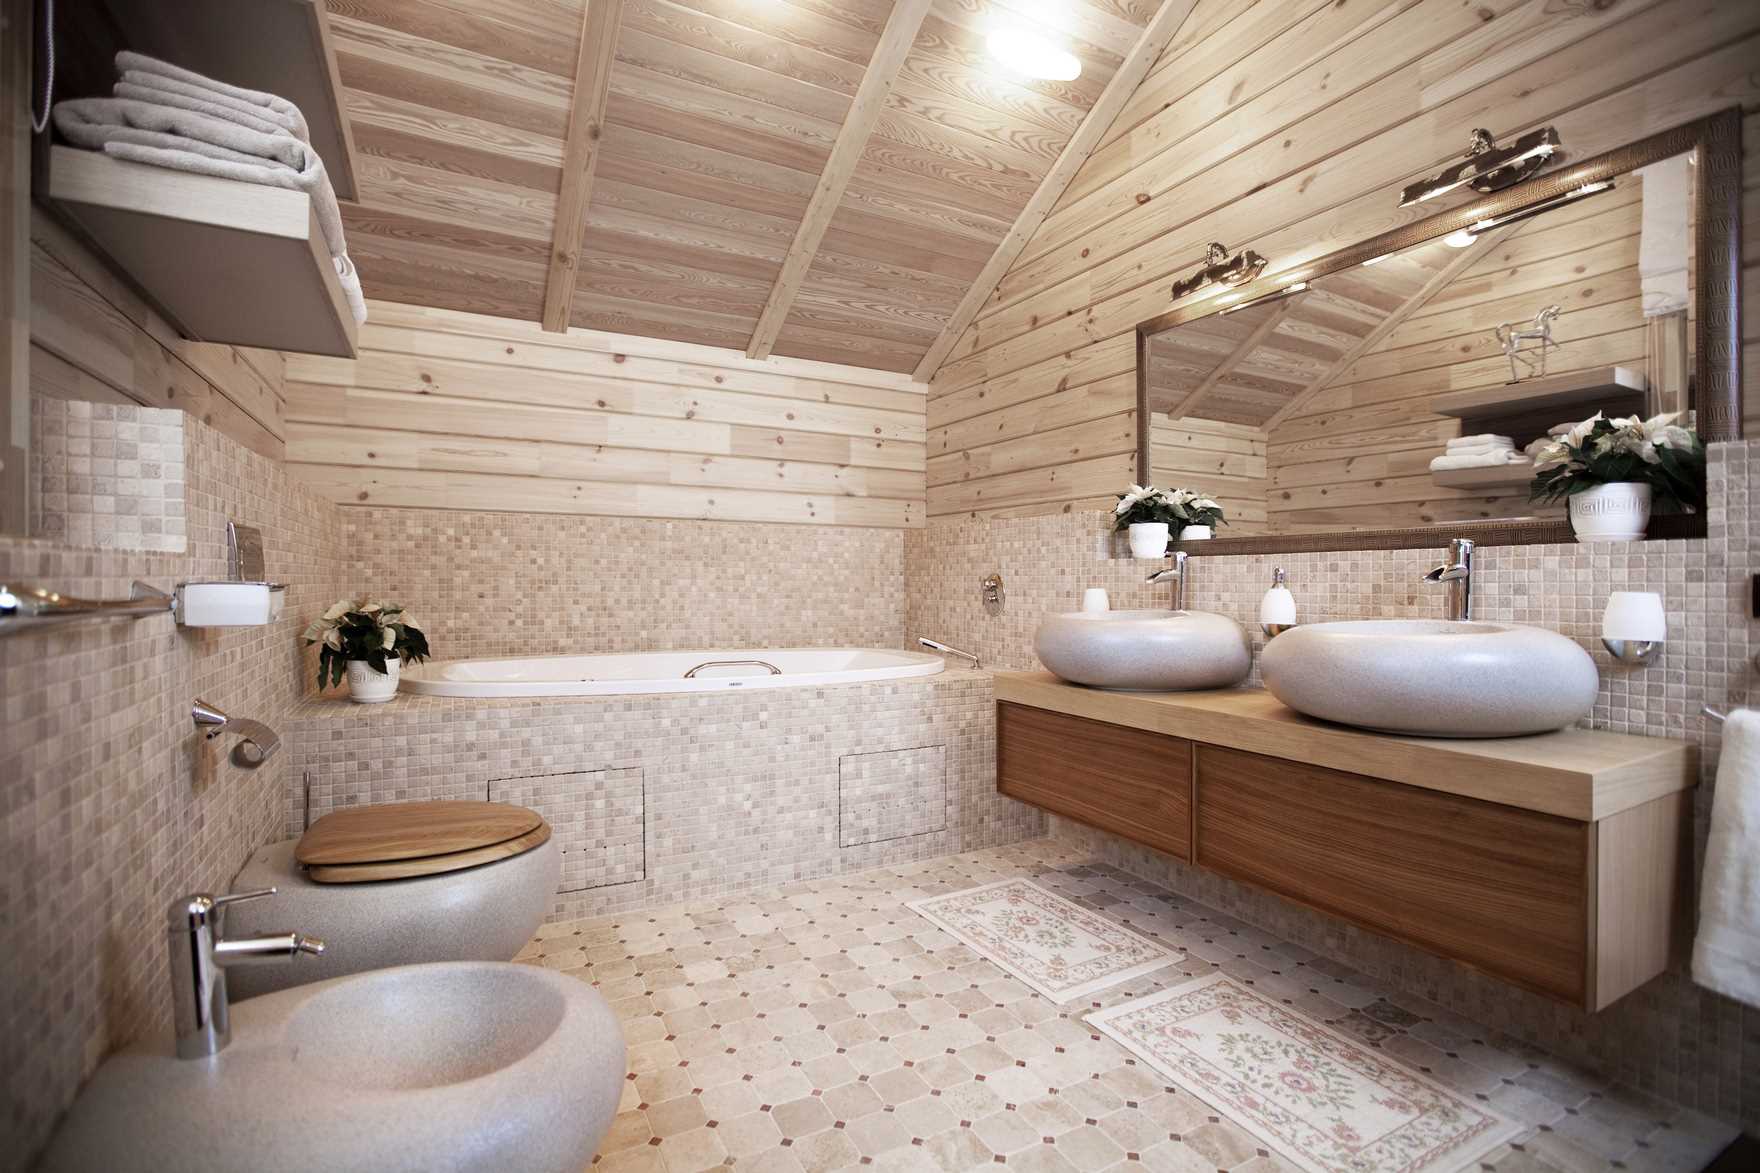 version du design inhabituel de la salle de bain dans une maison en bois